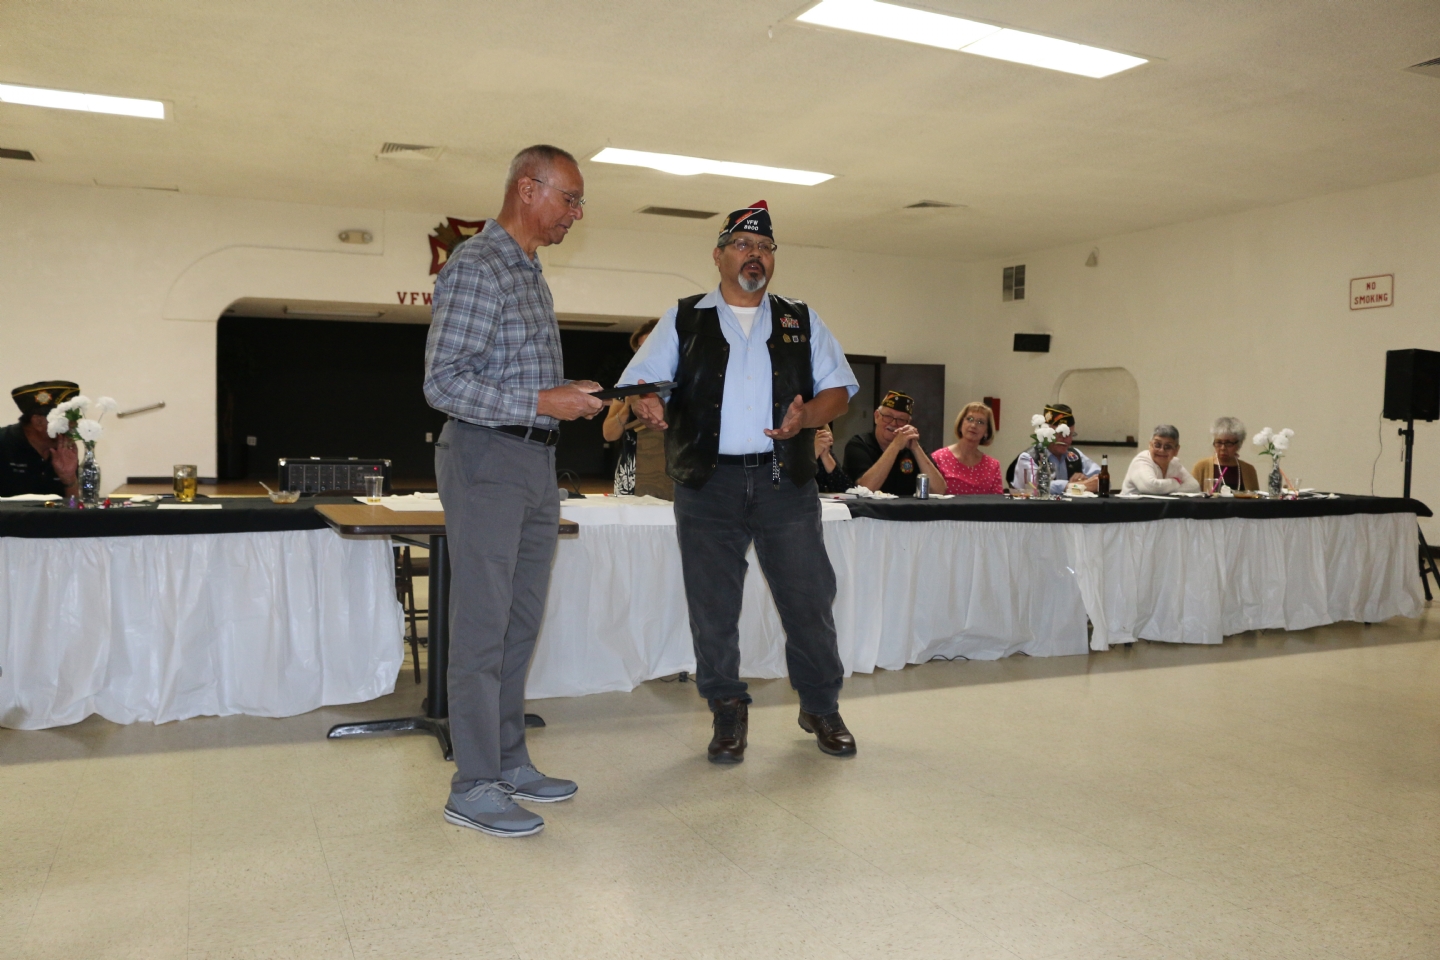 Commander Fernandez presents his Commander's Award to Vince Hogan.